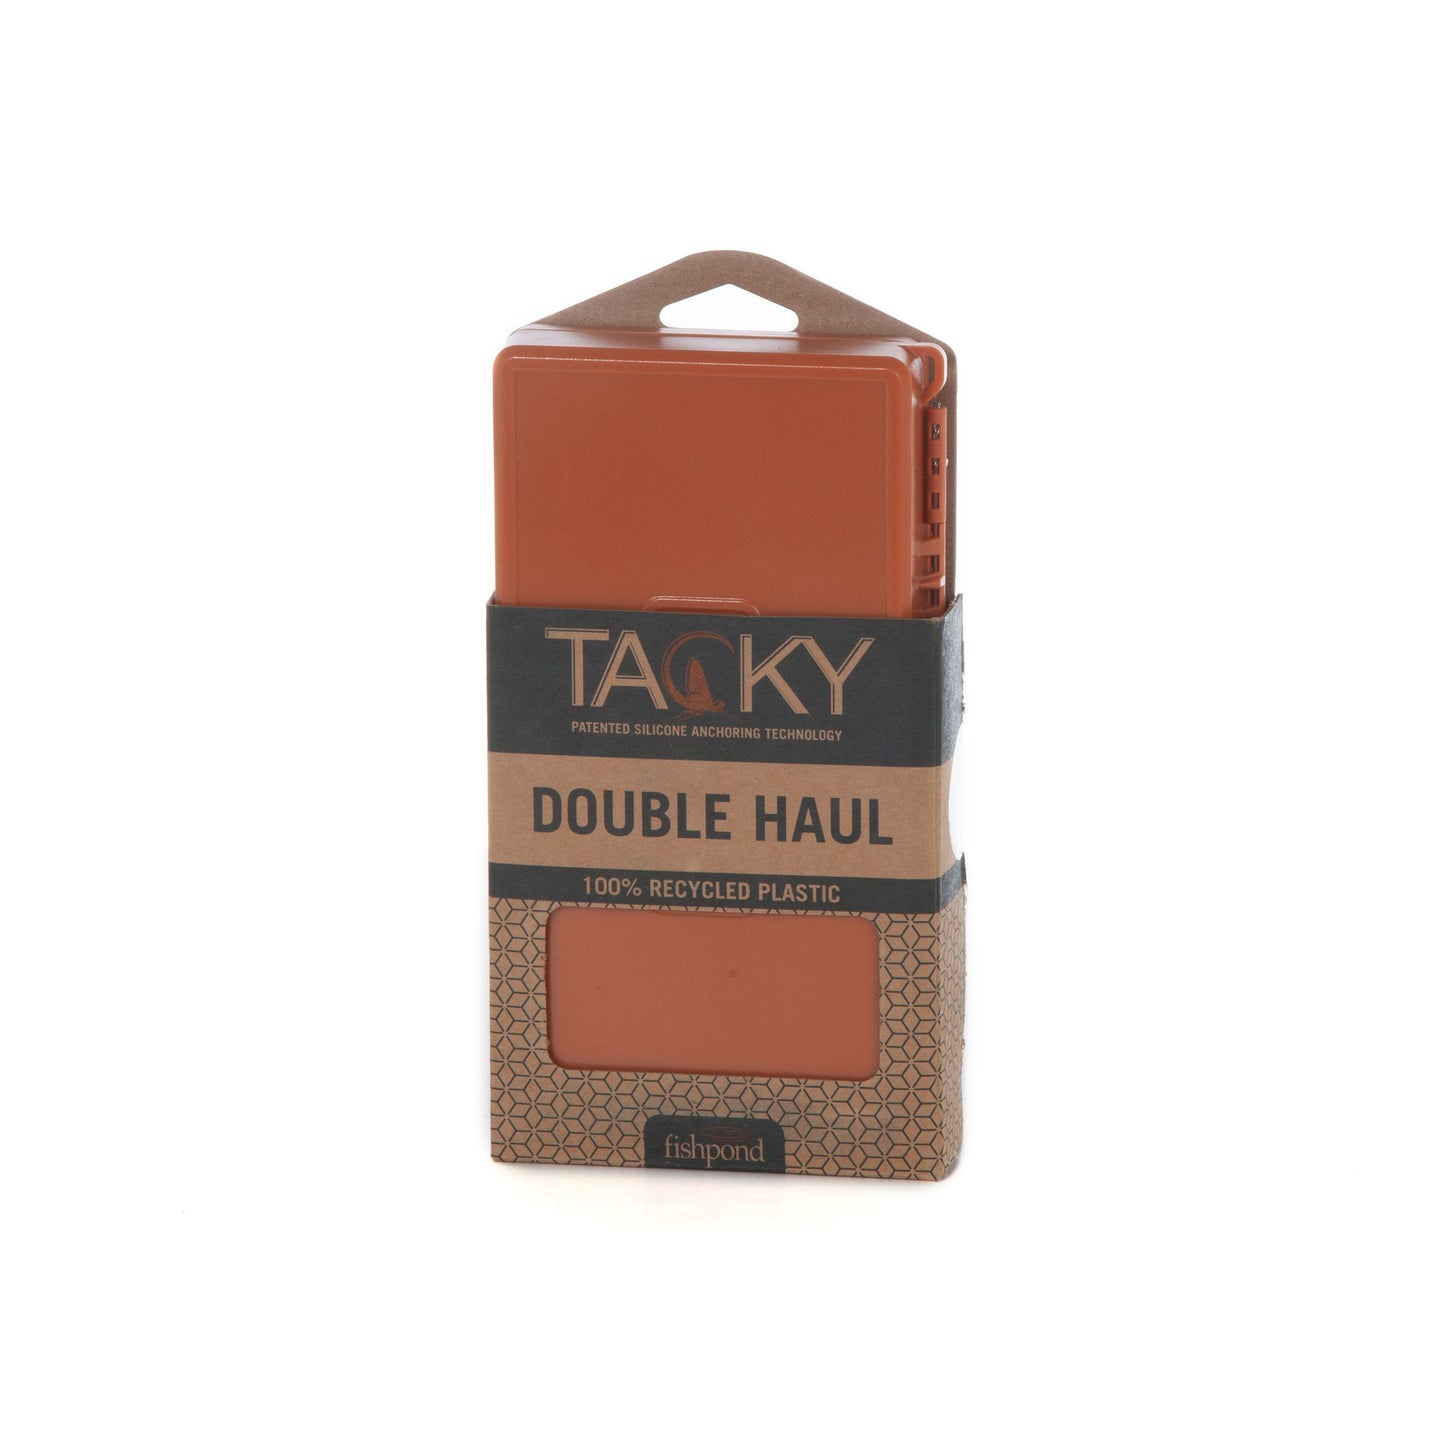 Tacky Double Haul Fly Box – Fishpond